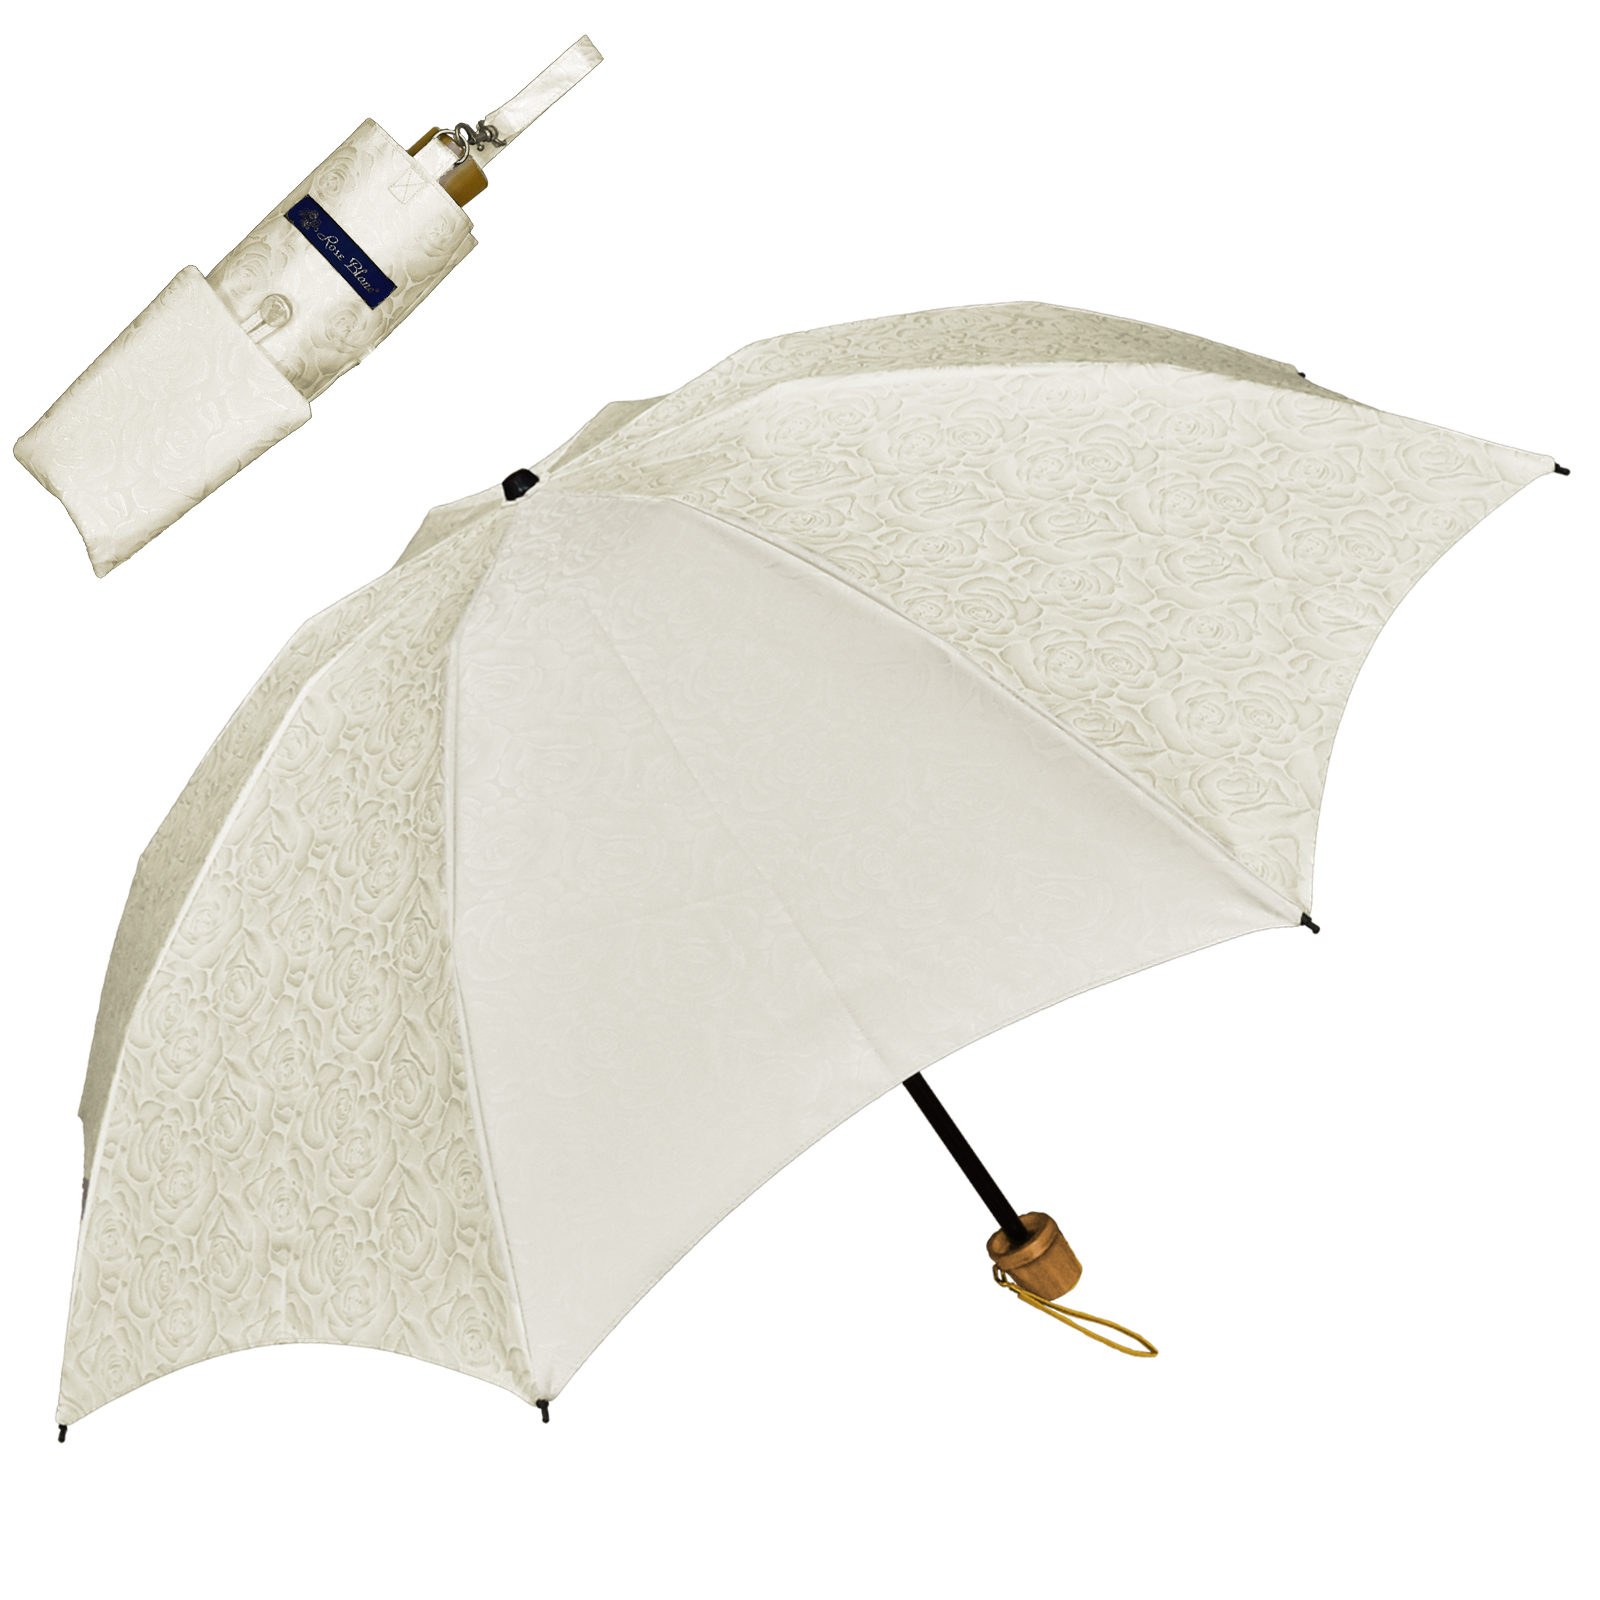 日傘 完全遮光 折りたたみ uv 軽量 晴雨兼用 3段 折りたたみ傘 遮光 100% 1級遮光 遮熱...